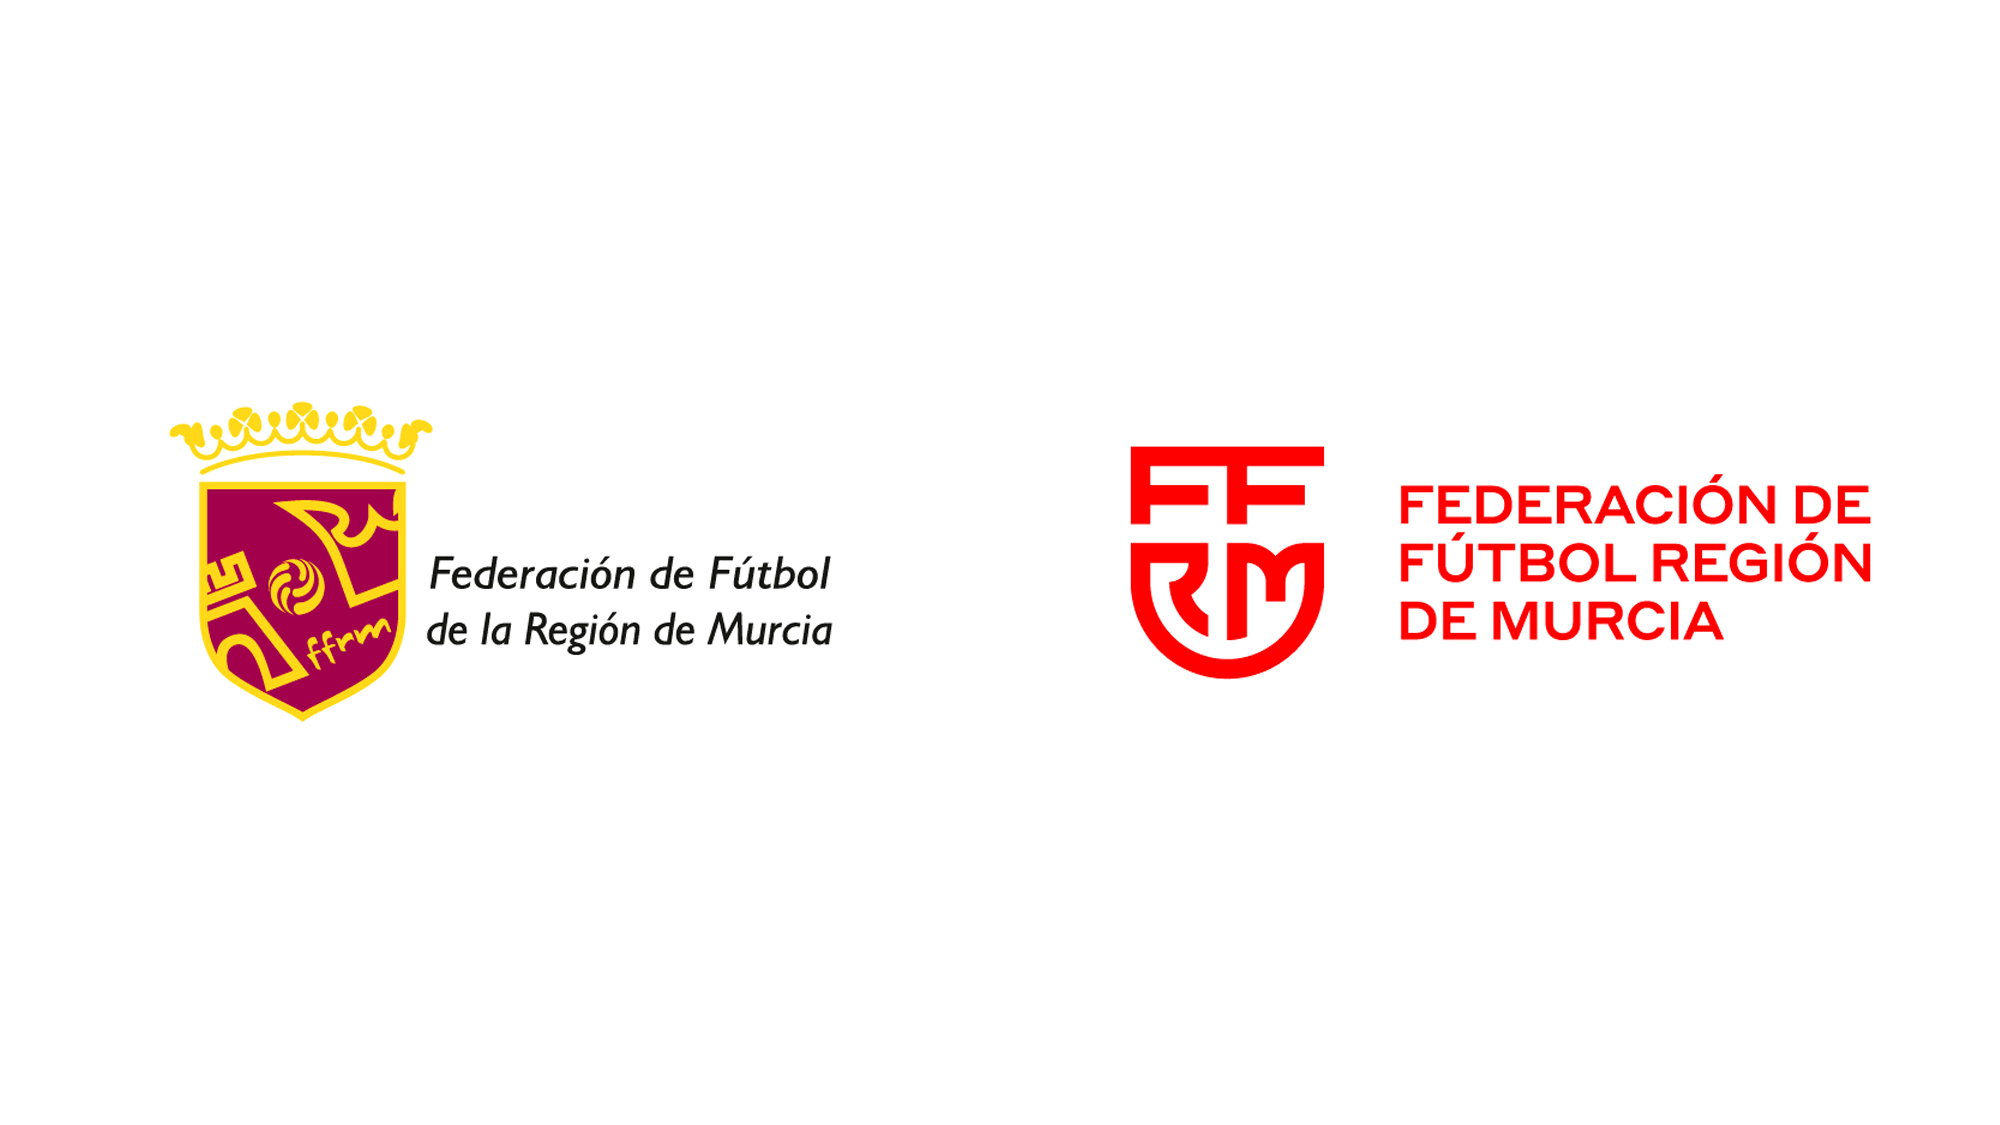 Federación de fútbol de la región de murcia